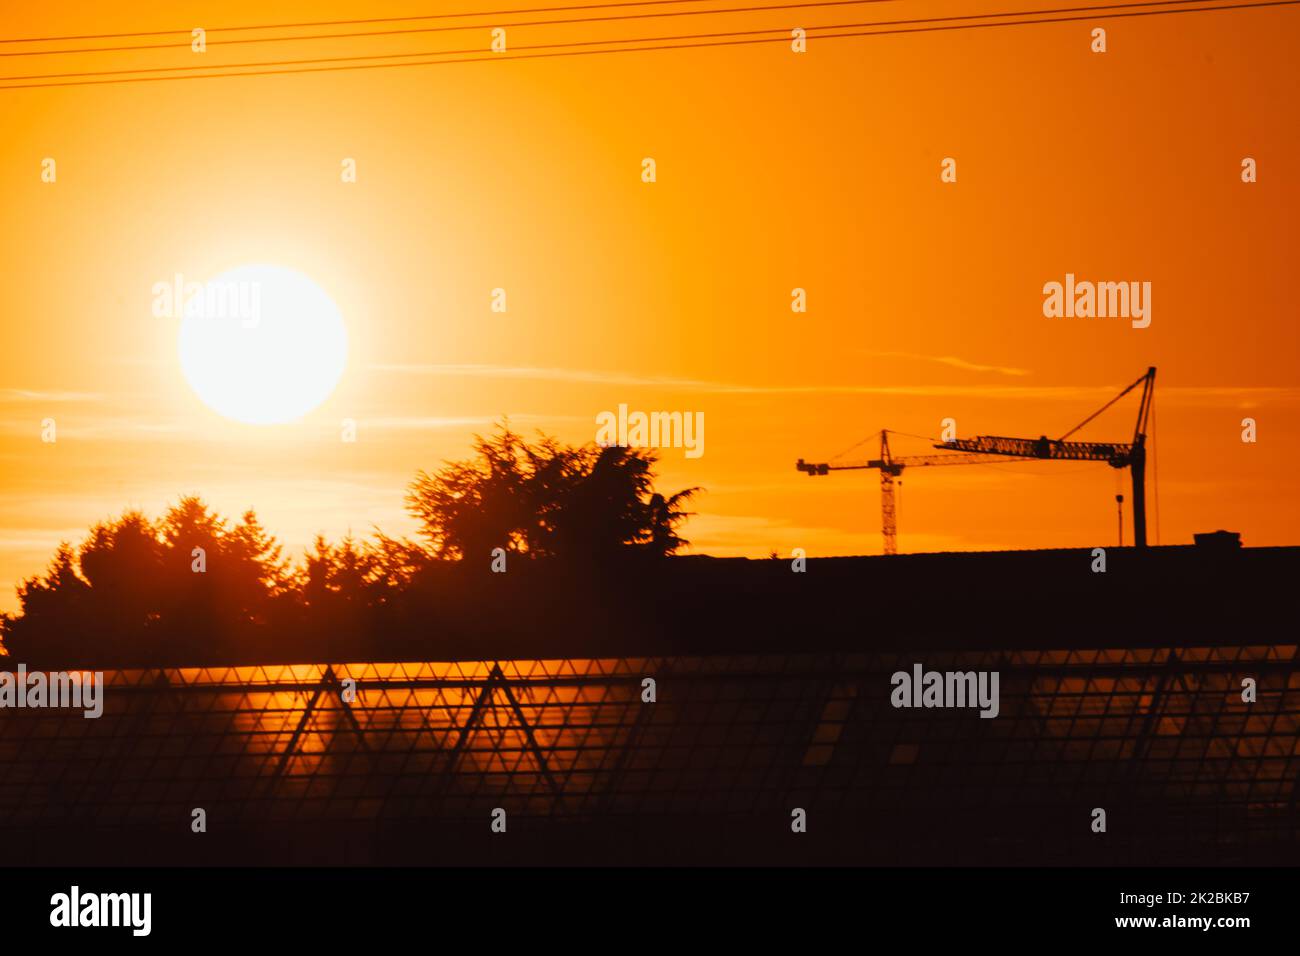 La silhouette haute de grue de construction dans le ciel orange coucher de soleil montre le chantier de construction avec l'ingénierie pour les bâtiments modernes et le développement de la ville comme travail d'équipe architectural pour les lignes de haute tension de gratte-ciel Banque D'Images